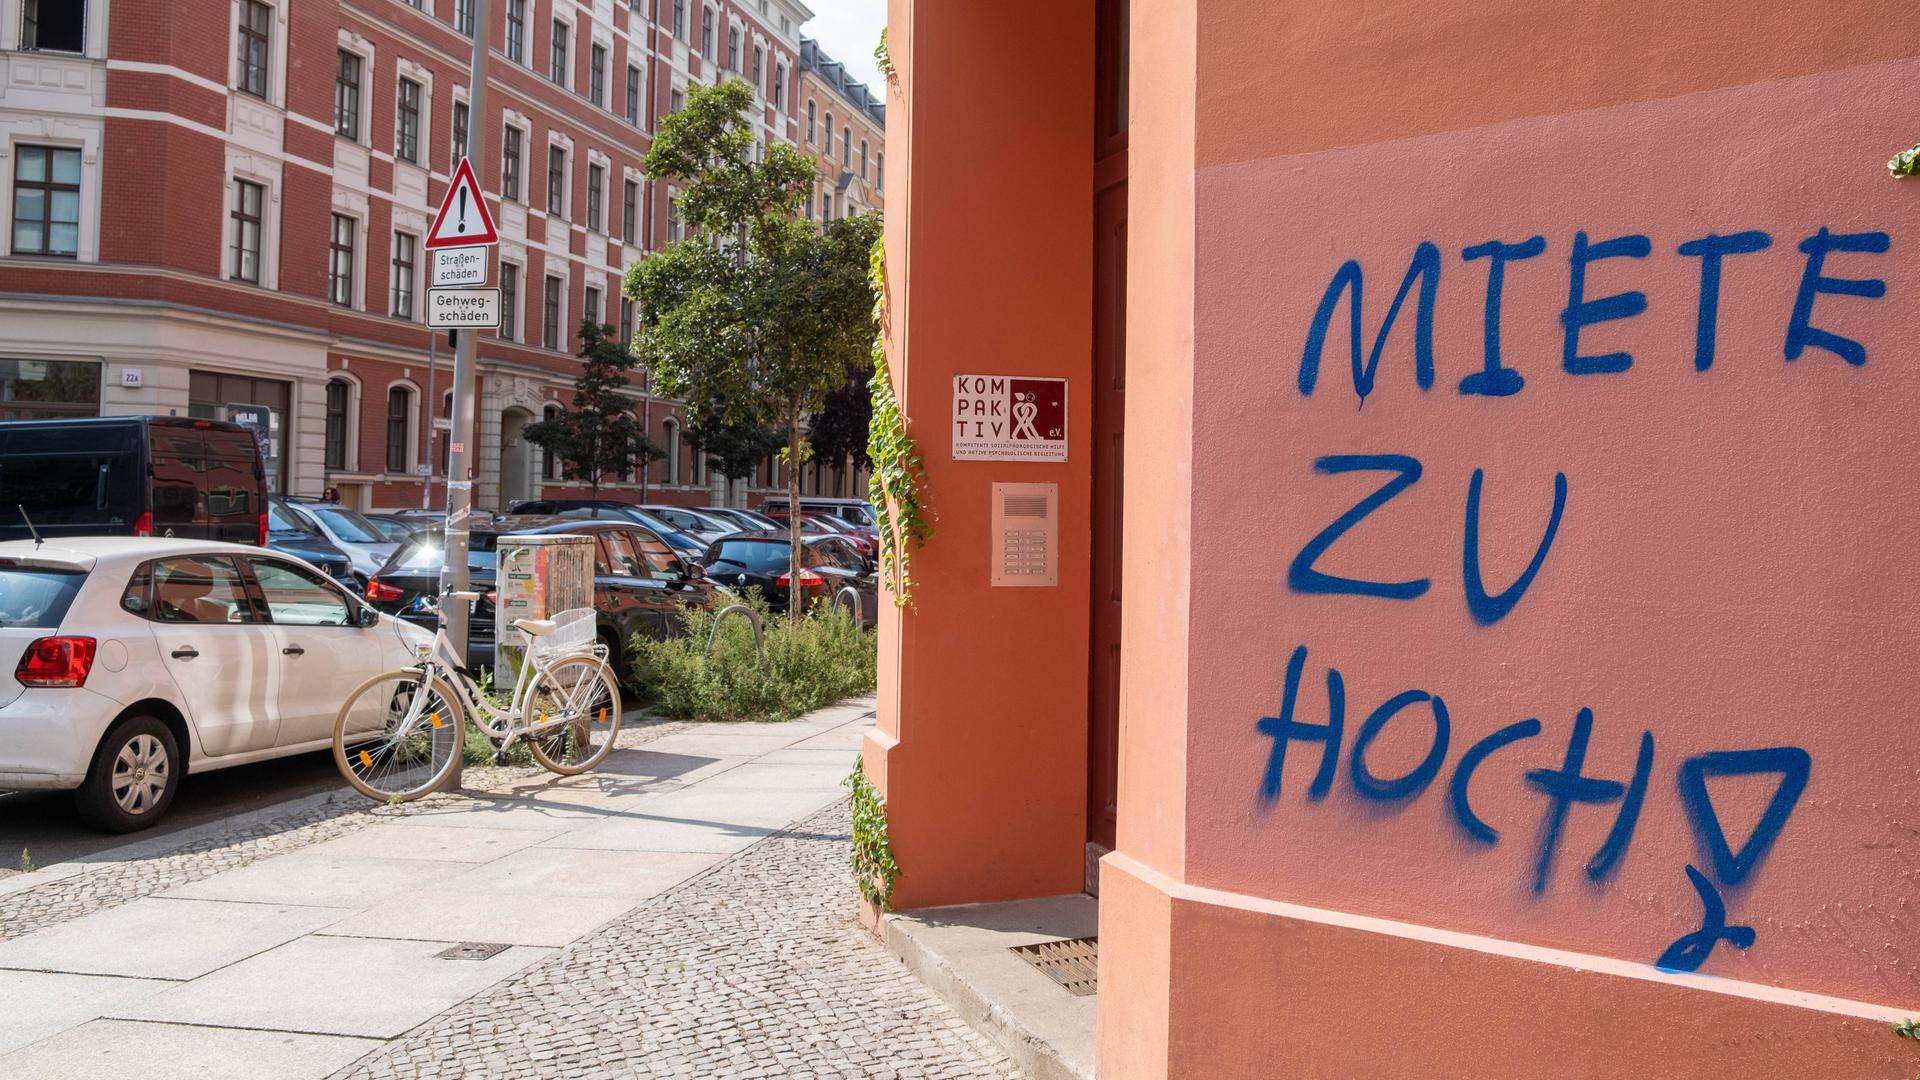 MIETE ZU HOCH - Schriftzug an einem Wohnhaus in der Pappelallee im Berliner Standtteil Prenzlauer Berg.